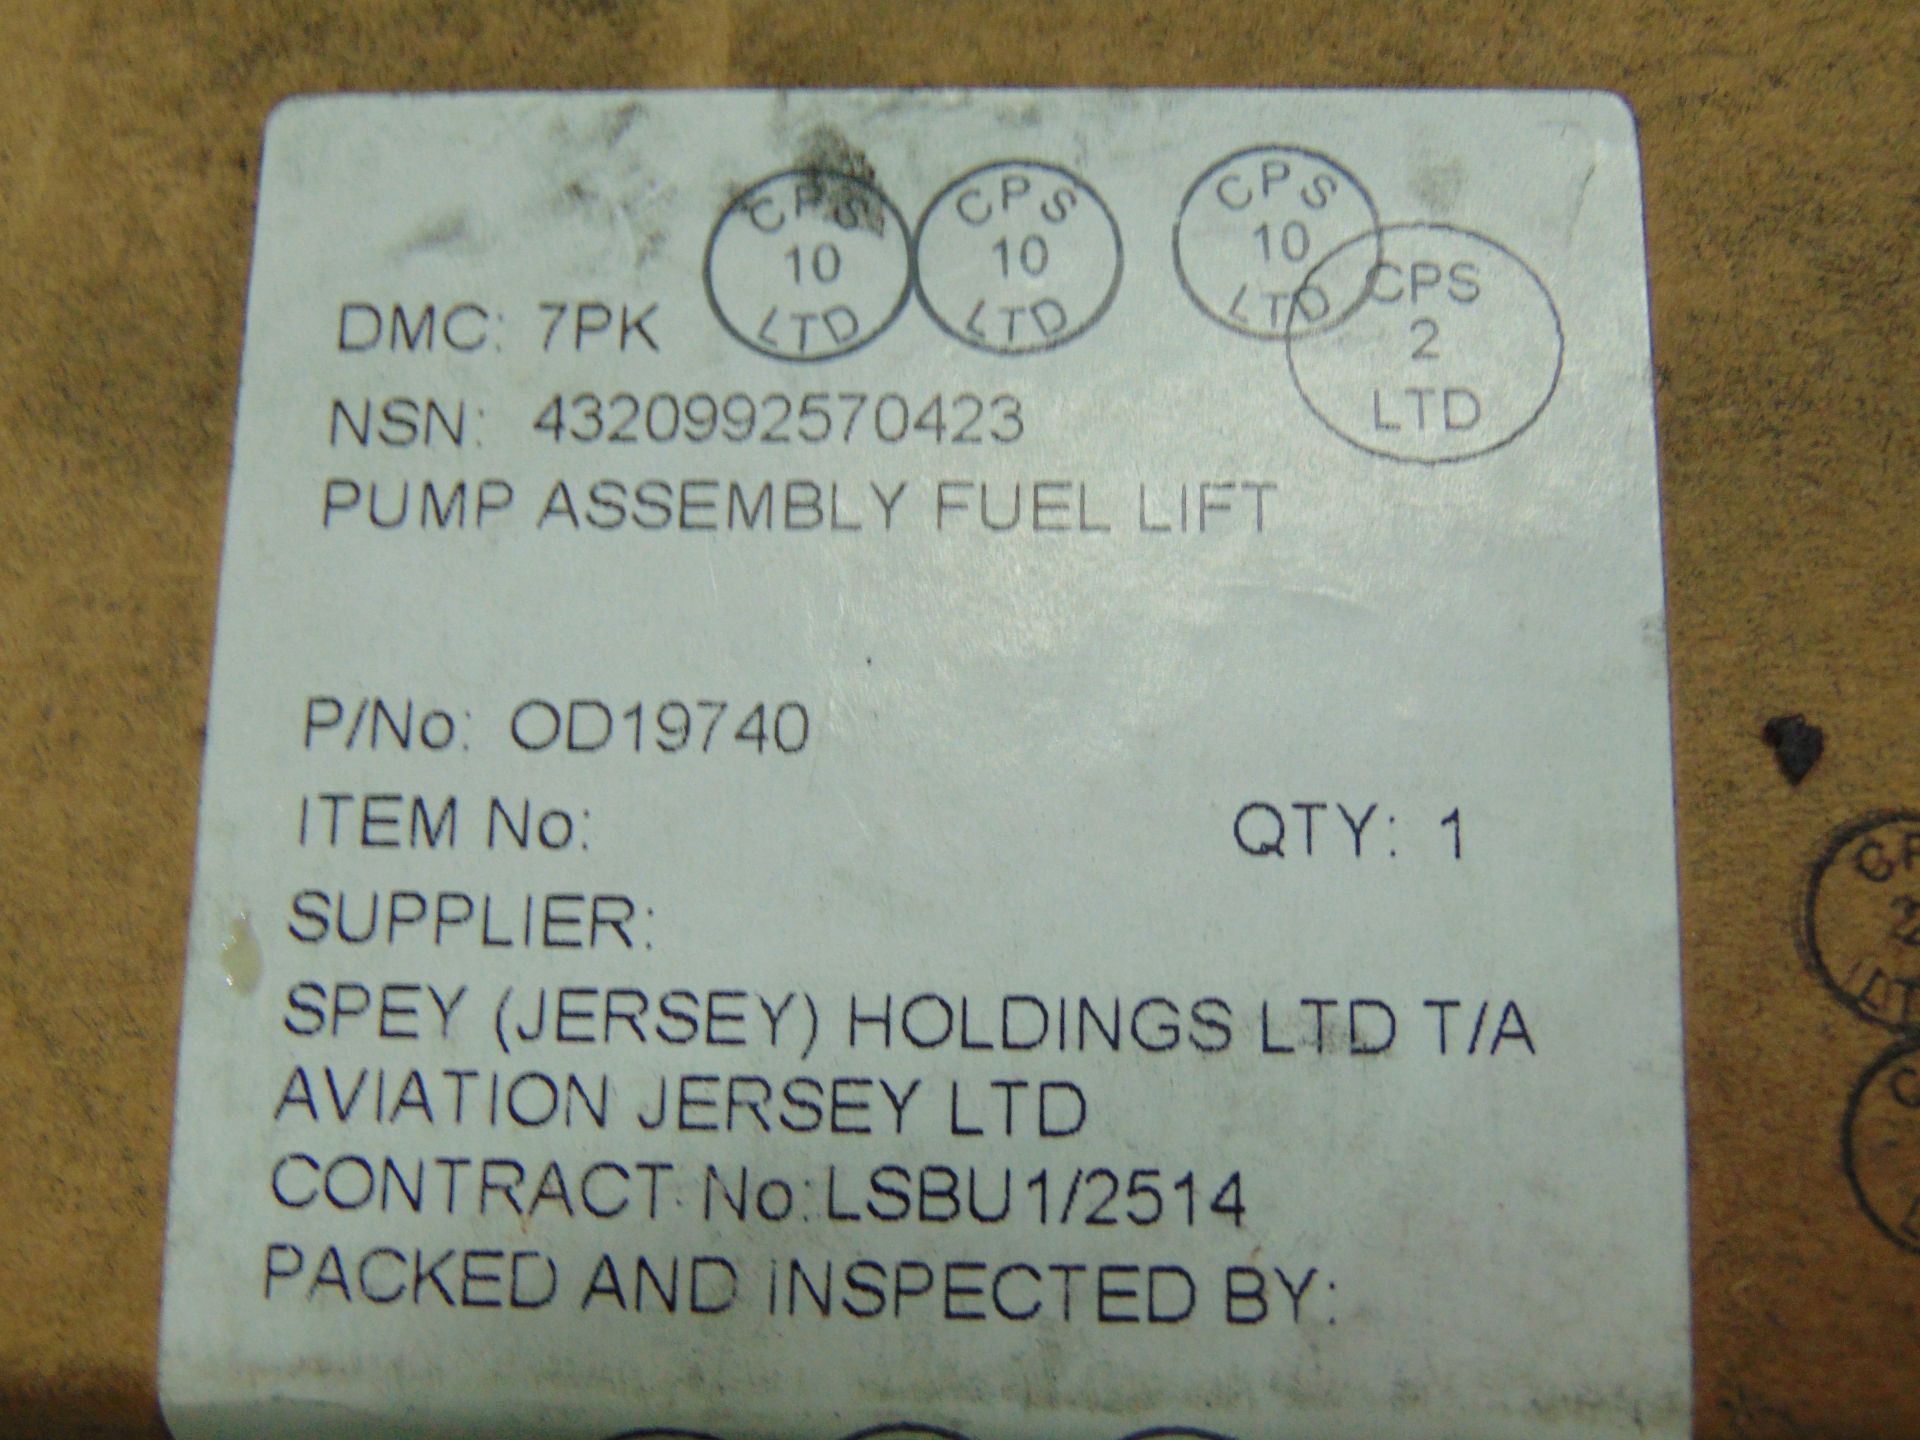 5 x Perkins Fuel Lift Pumps Assy P/no OD19740 - Image 5 of 5